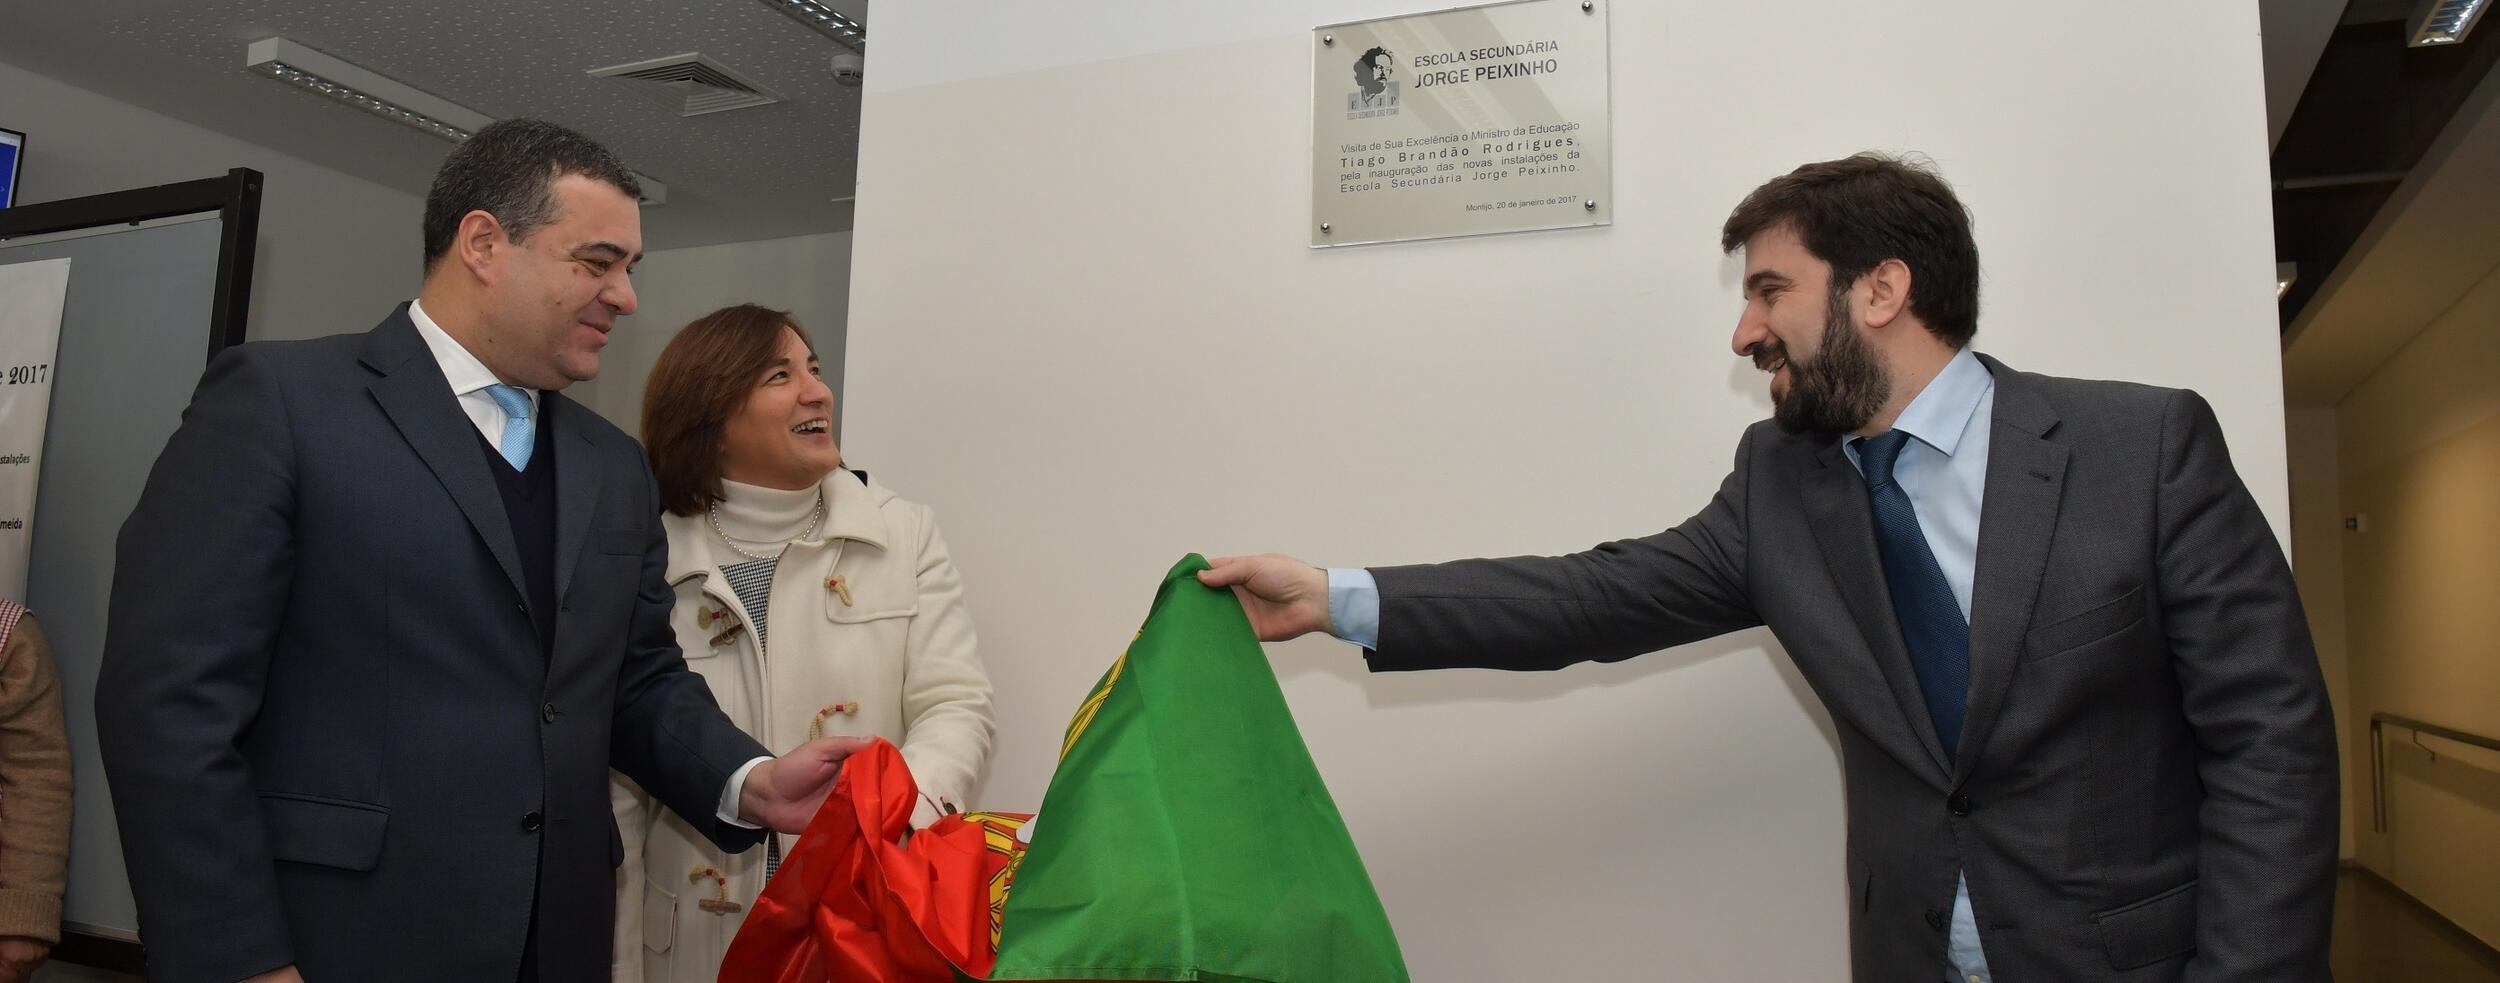 Ministro da Educação inaugura novas instalações da Escola Secundária Jorge Peixinho